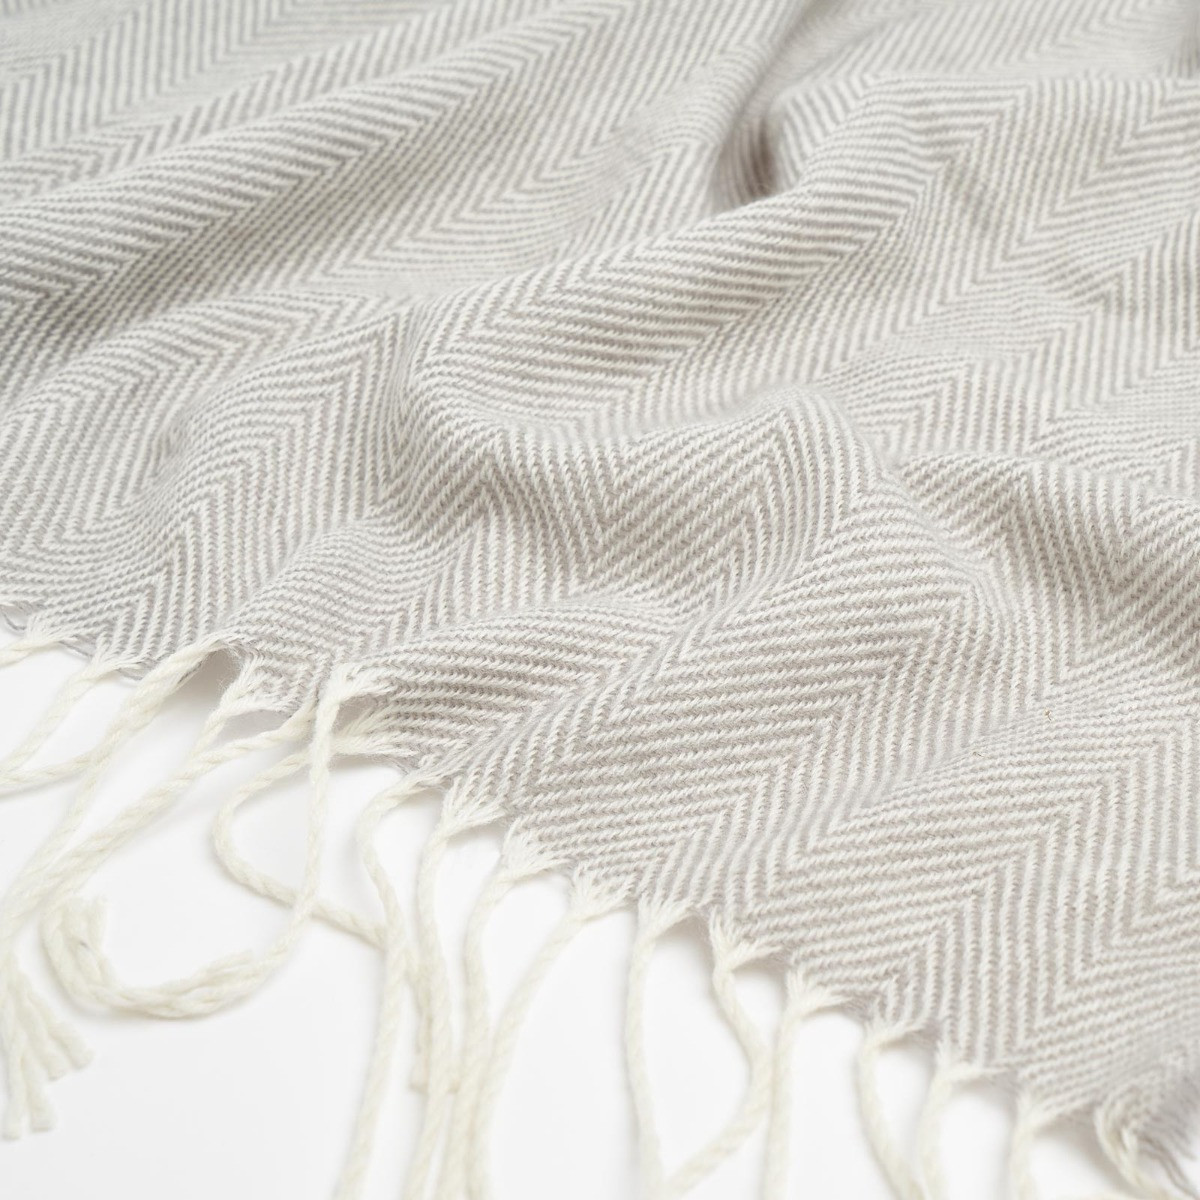 Highams Acrylic Stripe Chevron Fleece Throw, Silver - 150 x 200cm>